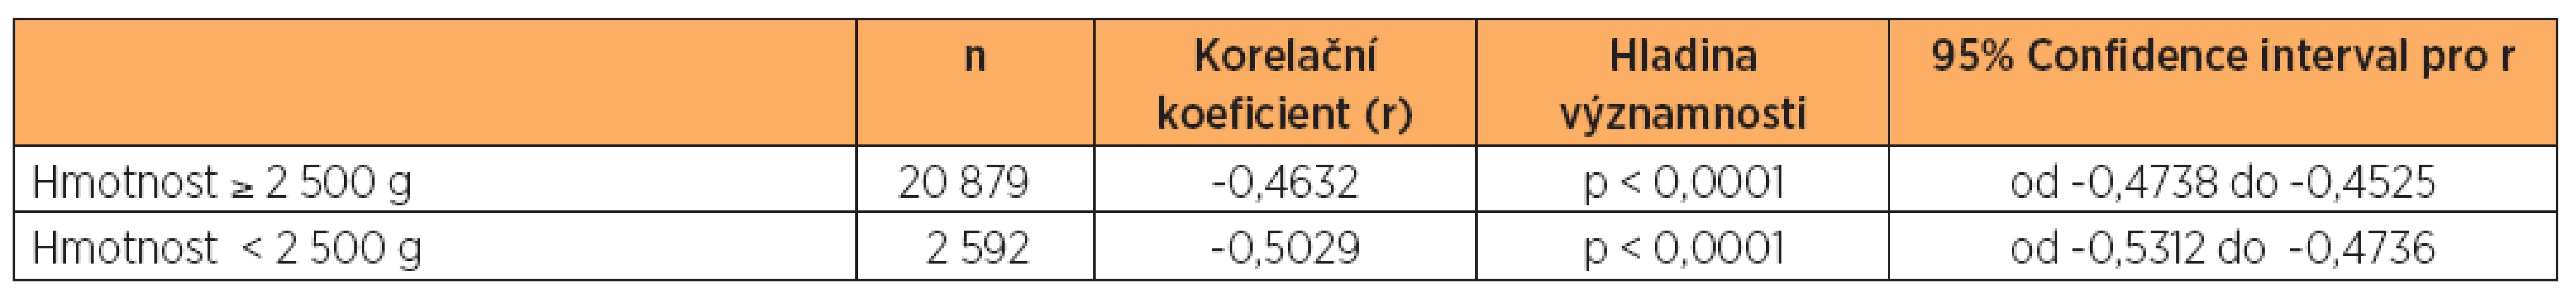 Korelace pH s hodnotami laktátu v závislosti na hmotnosti novorozenců